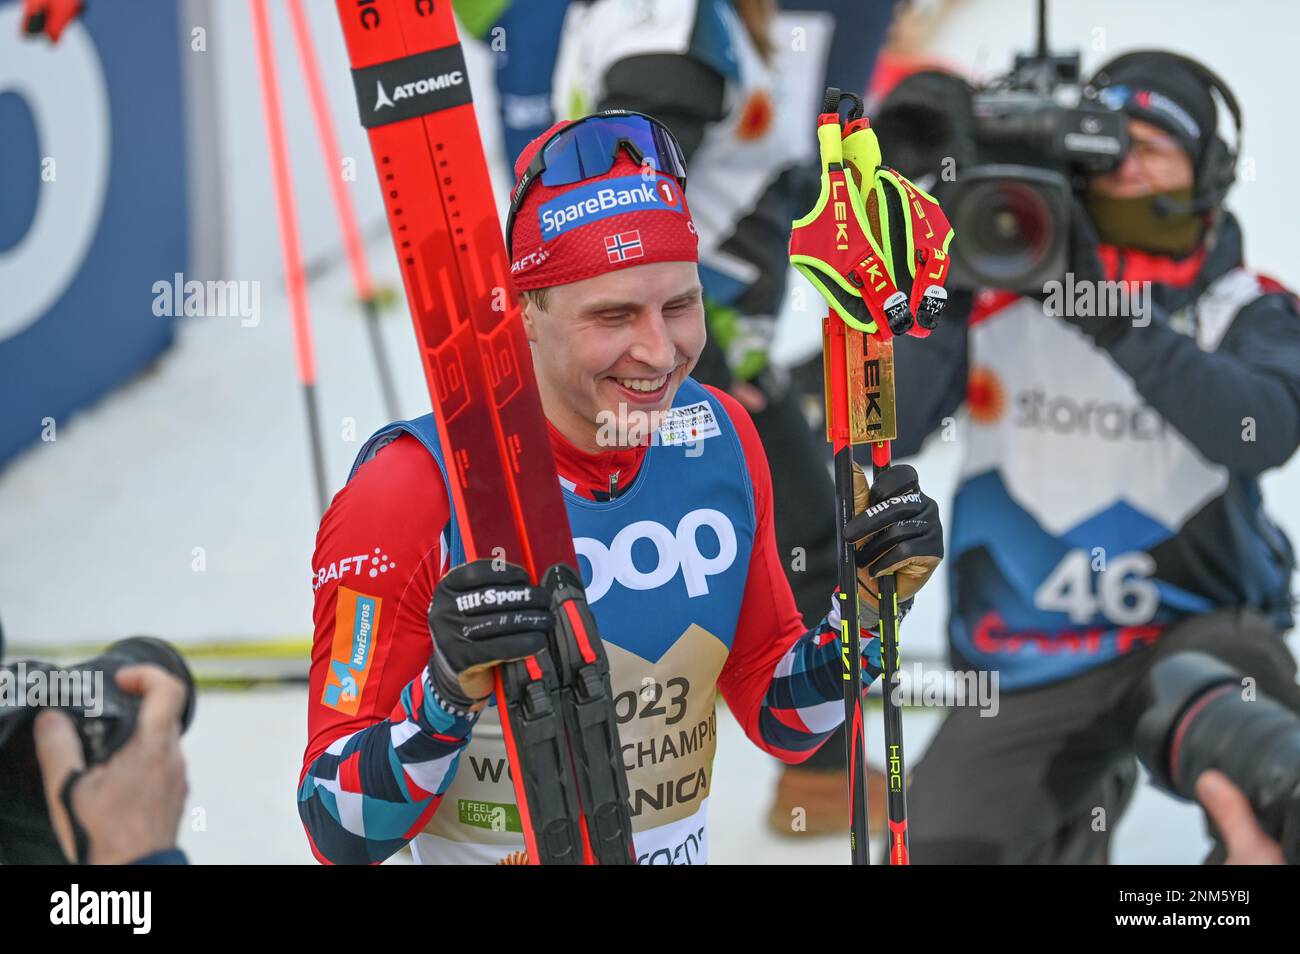 Il norvegese Simen Hegstad Krueger è al centro dell’attenzione dopo aver vinto lo skiathlon maschile ai Campionati mondiali di sci nordico FIS 2023 di Planica, Slovenia, 24 febbraio 2023. L'evento combina tecniche classiche e freestyle in un'unica gara. Foto Stock